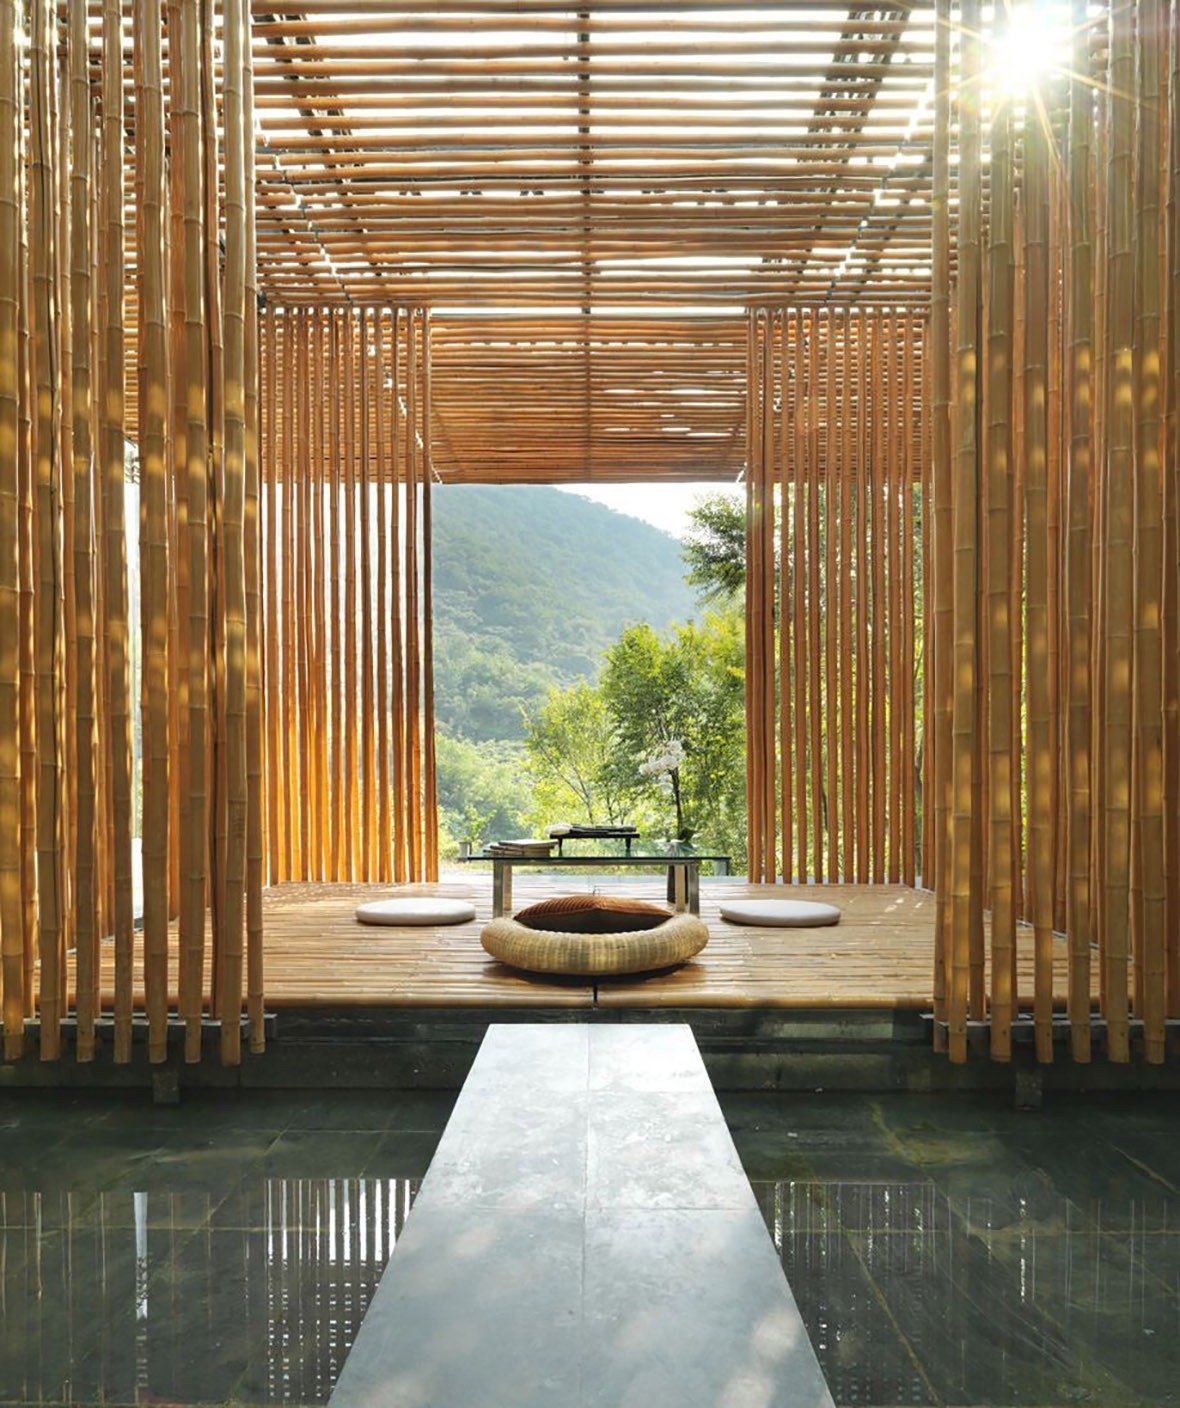 竹屋設計由大型透光的落地玻璃和金黃色的細竹構成，將日光從不同的角度入折射入室內。